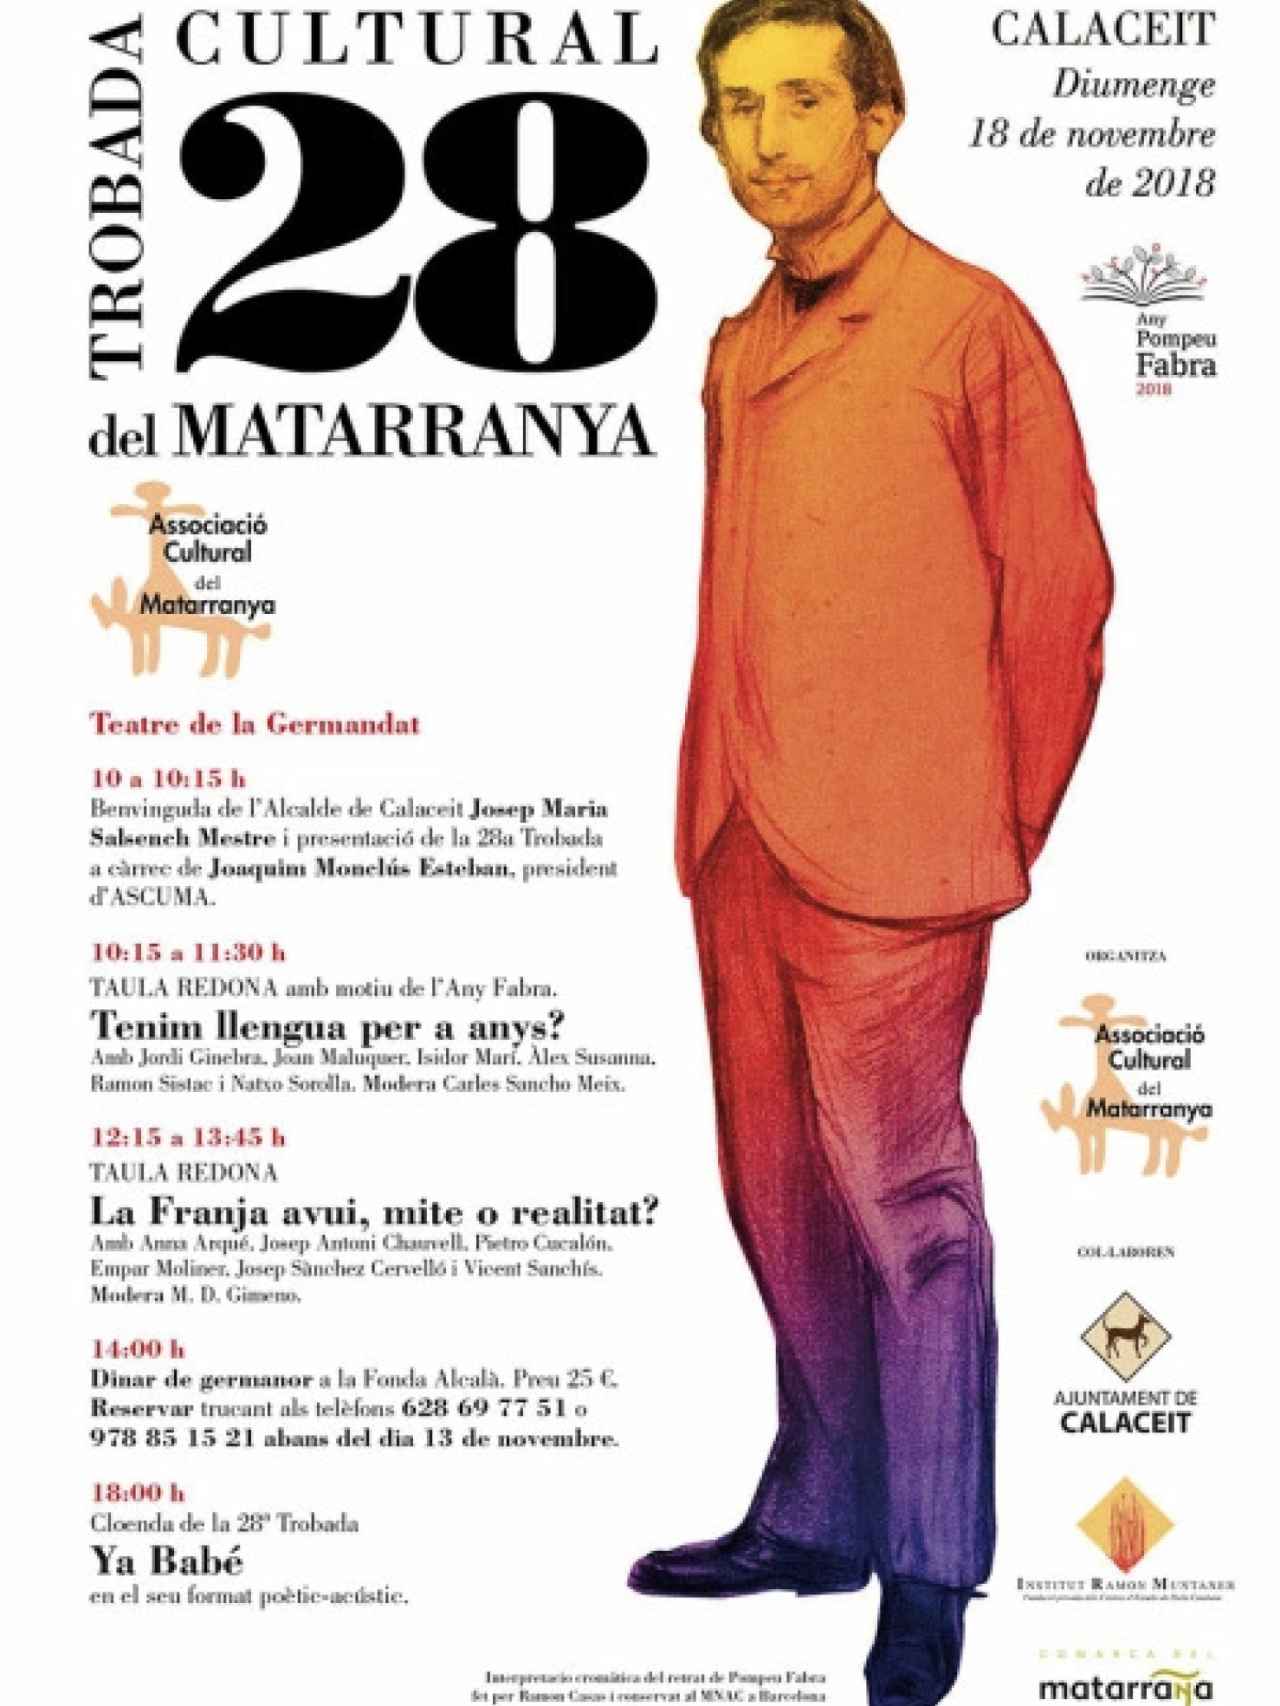 Cartel de las jornadas pancatalanistas de la Associació Cultural del Matarranya.